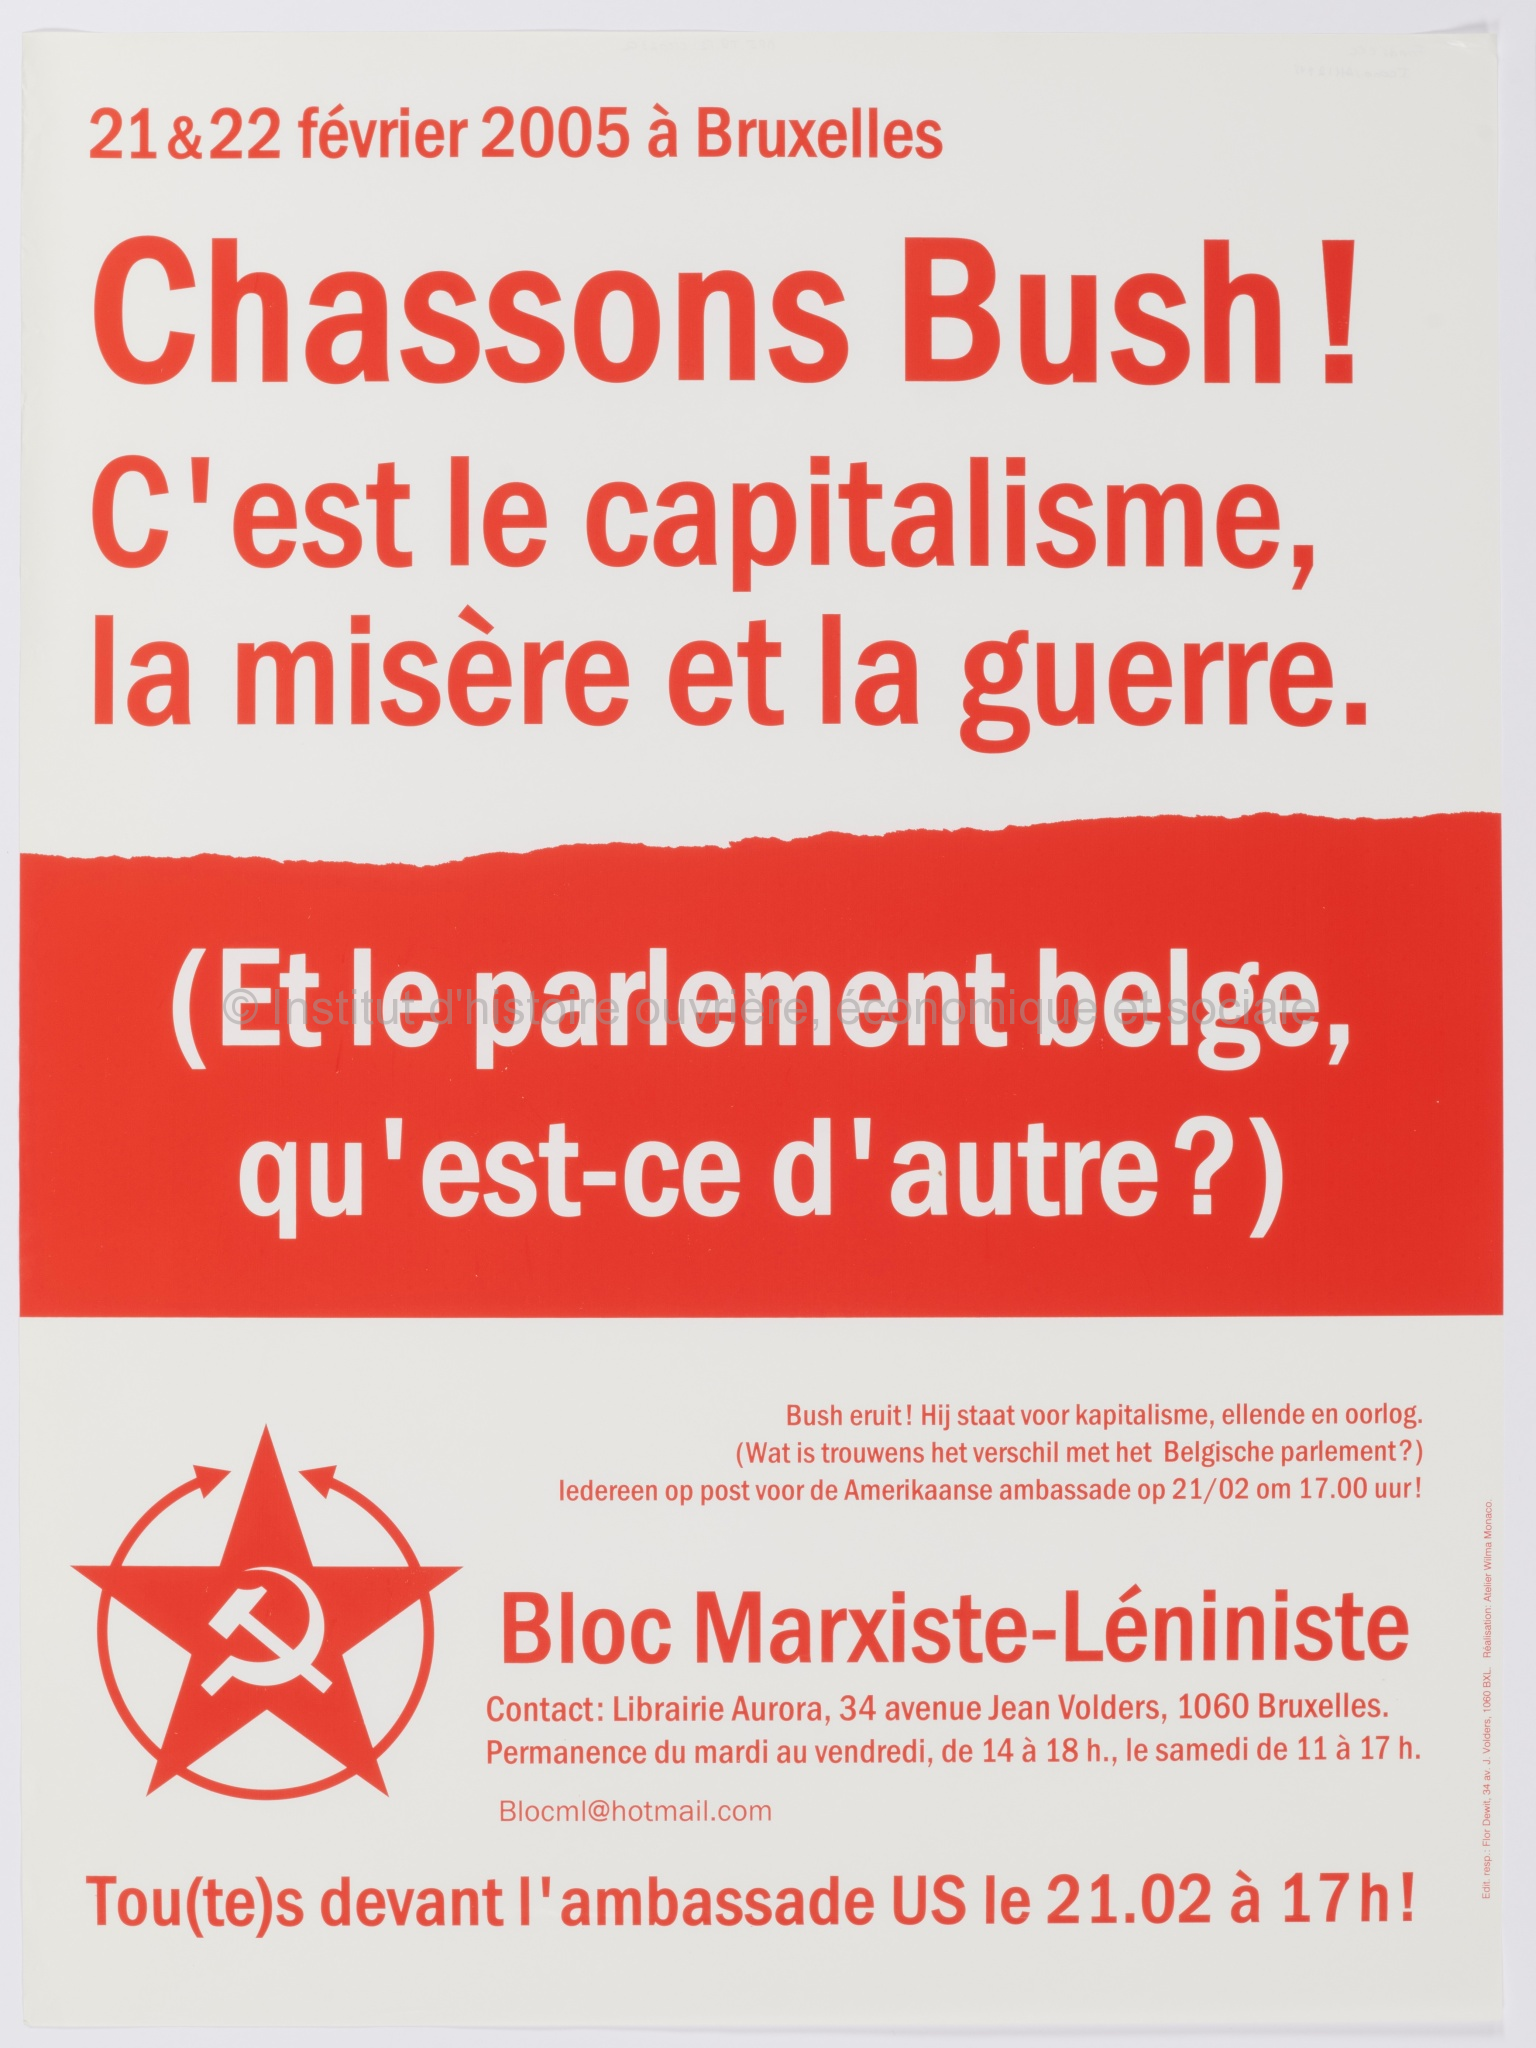 Chassons Bush ! C'est le capitalisme, la misère et la guerre (et le parlement belge, qu'est-ce d'autre ?) : 21 & 22 février 2005 à Bruxelles